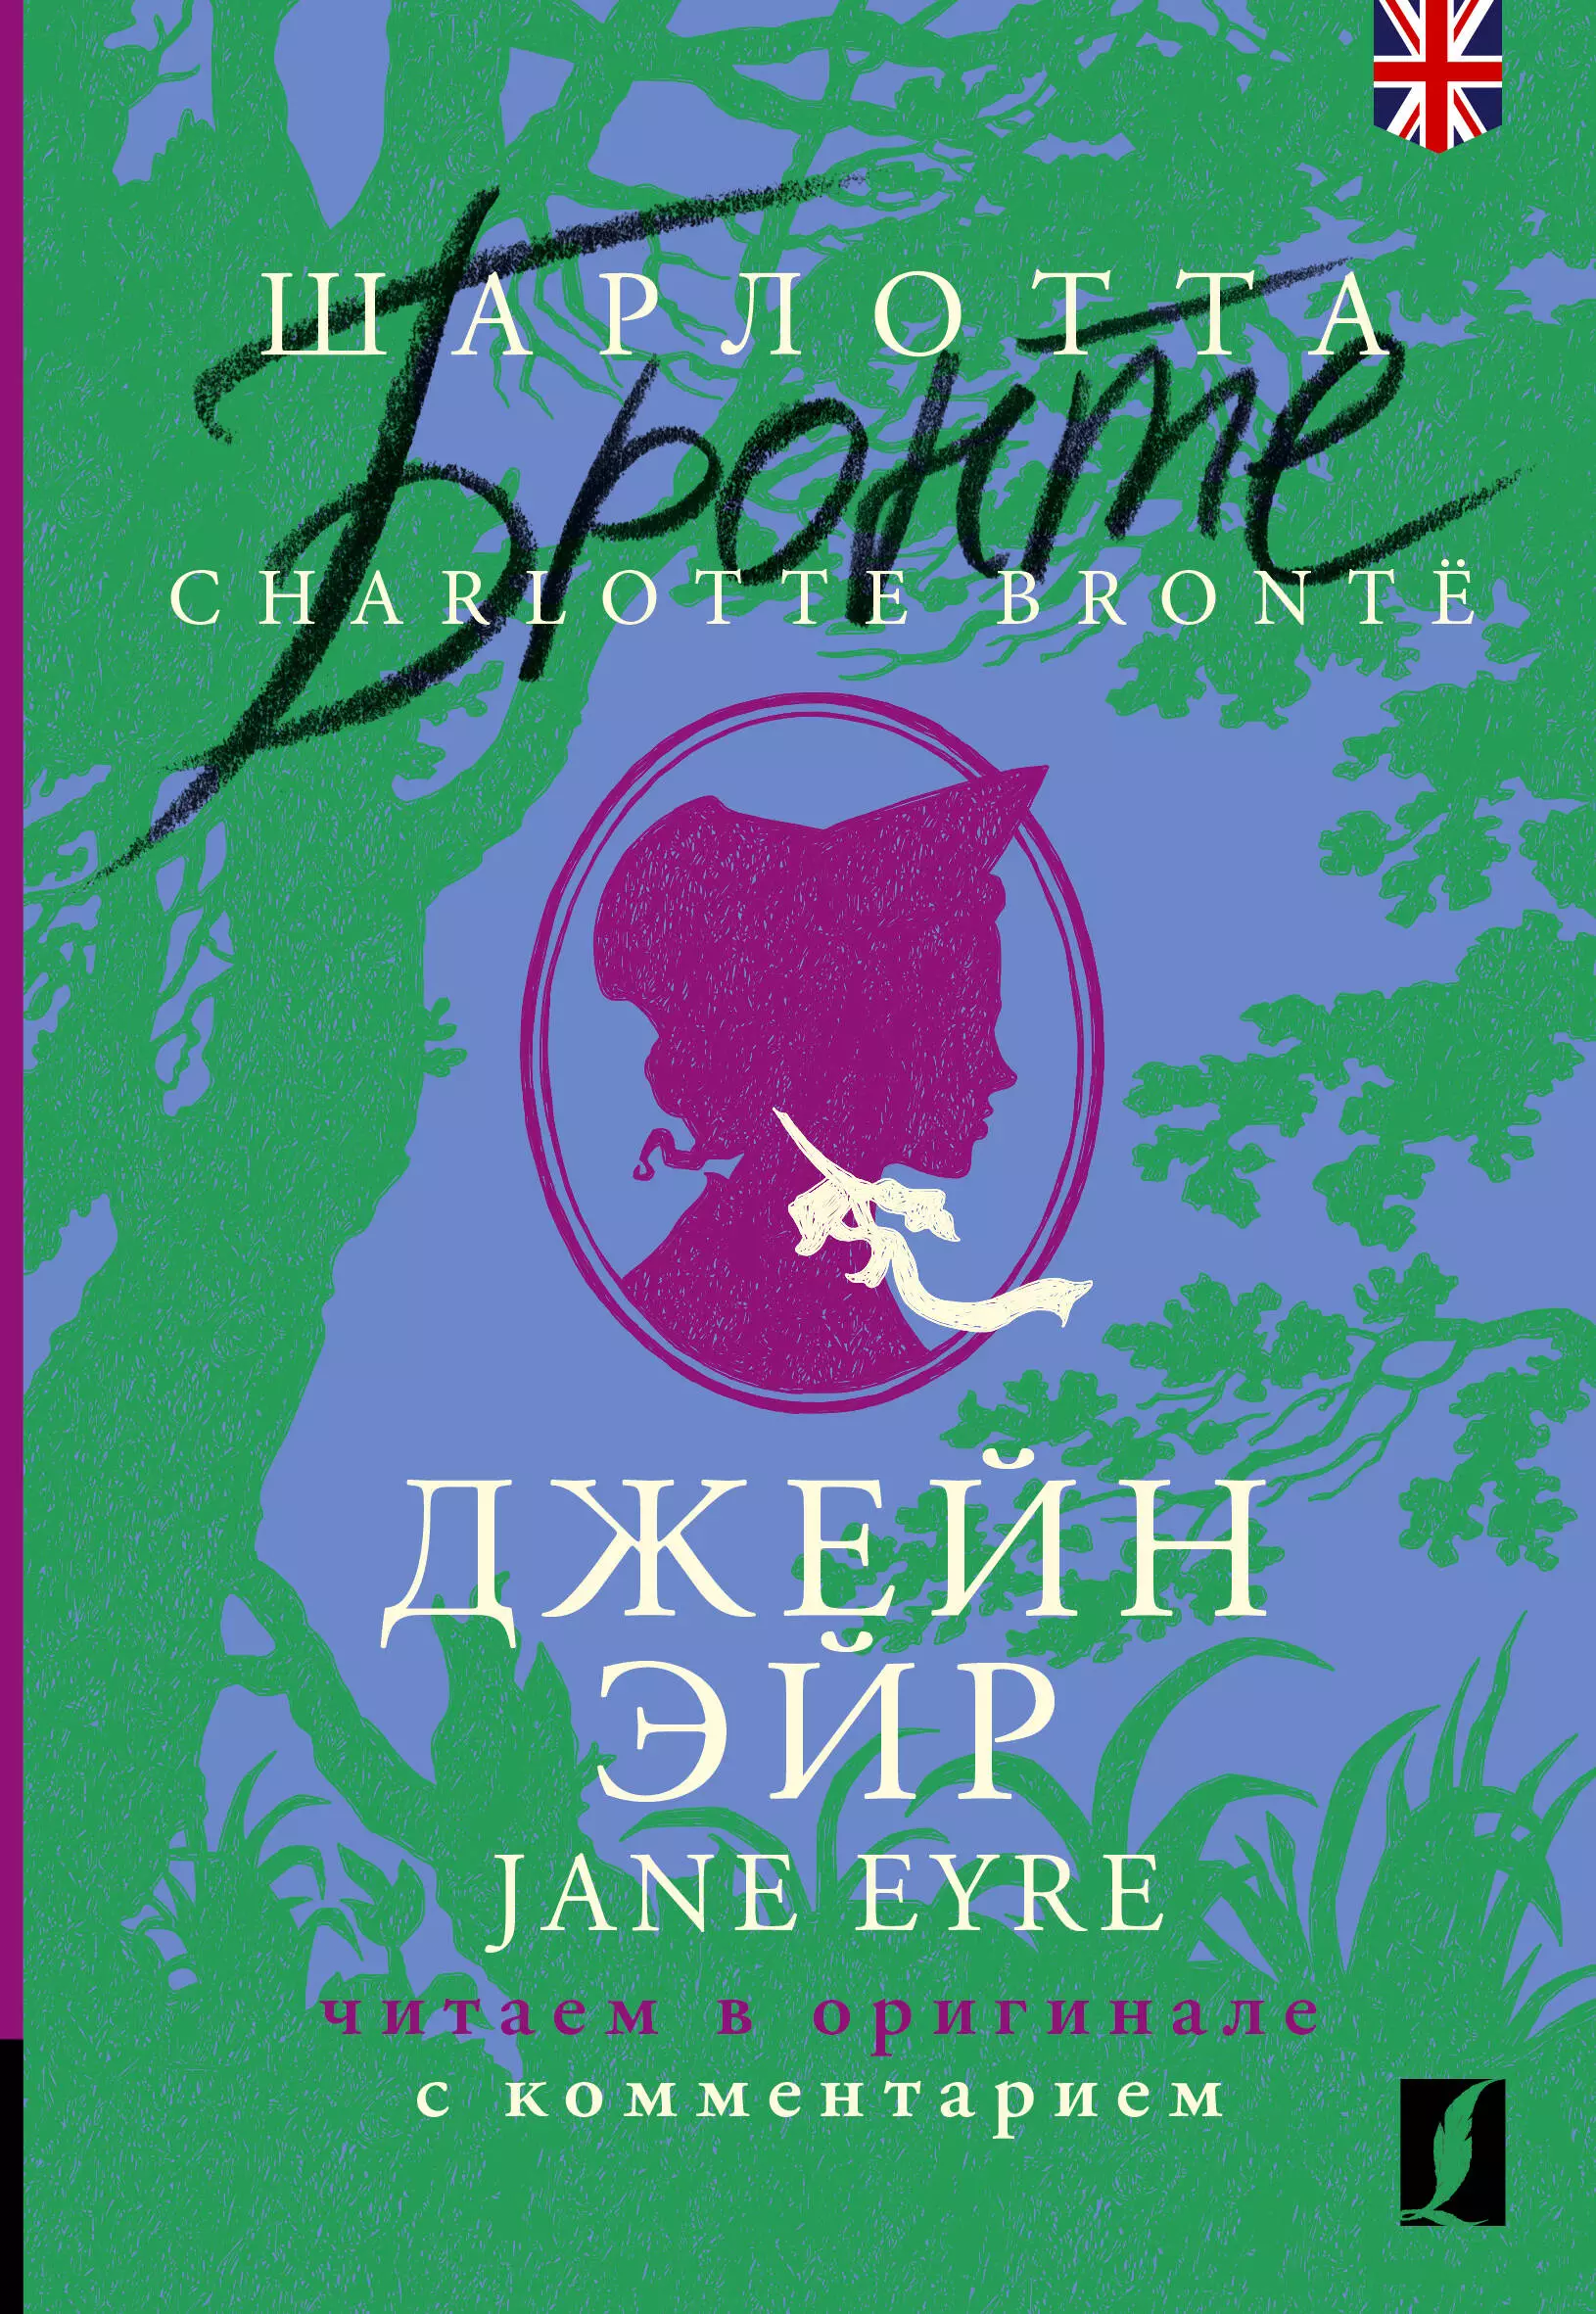 Бронте Шарлотта Джейн Эйр / Jane Eyre: читаем в оригинале с комментарием